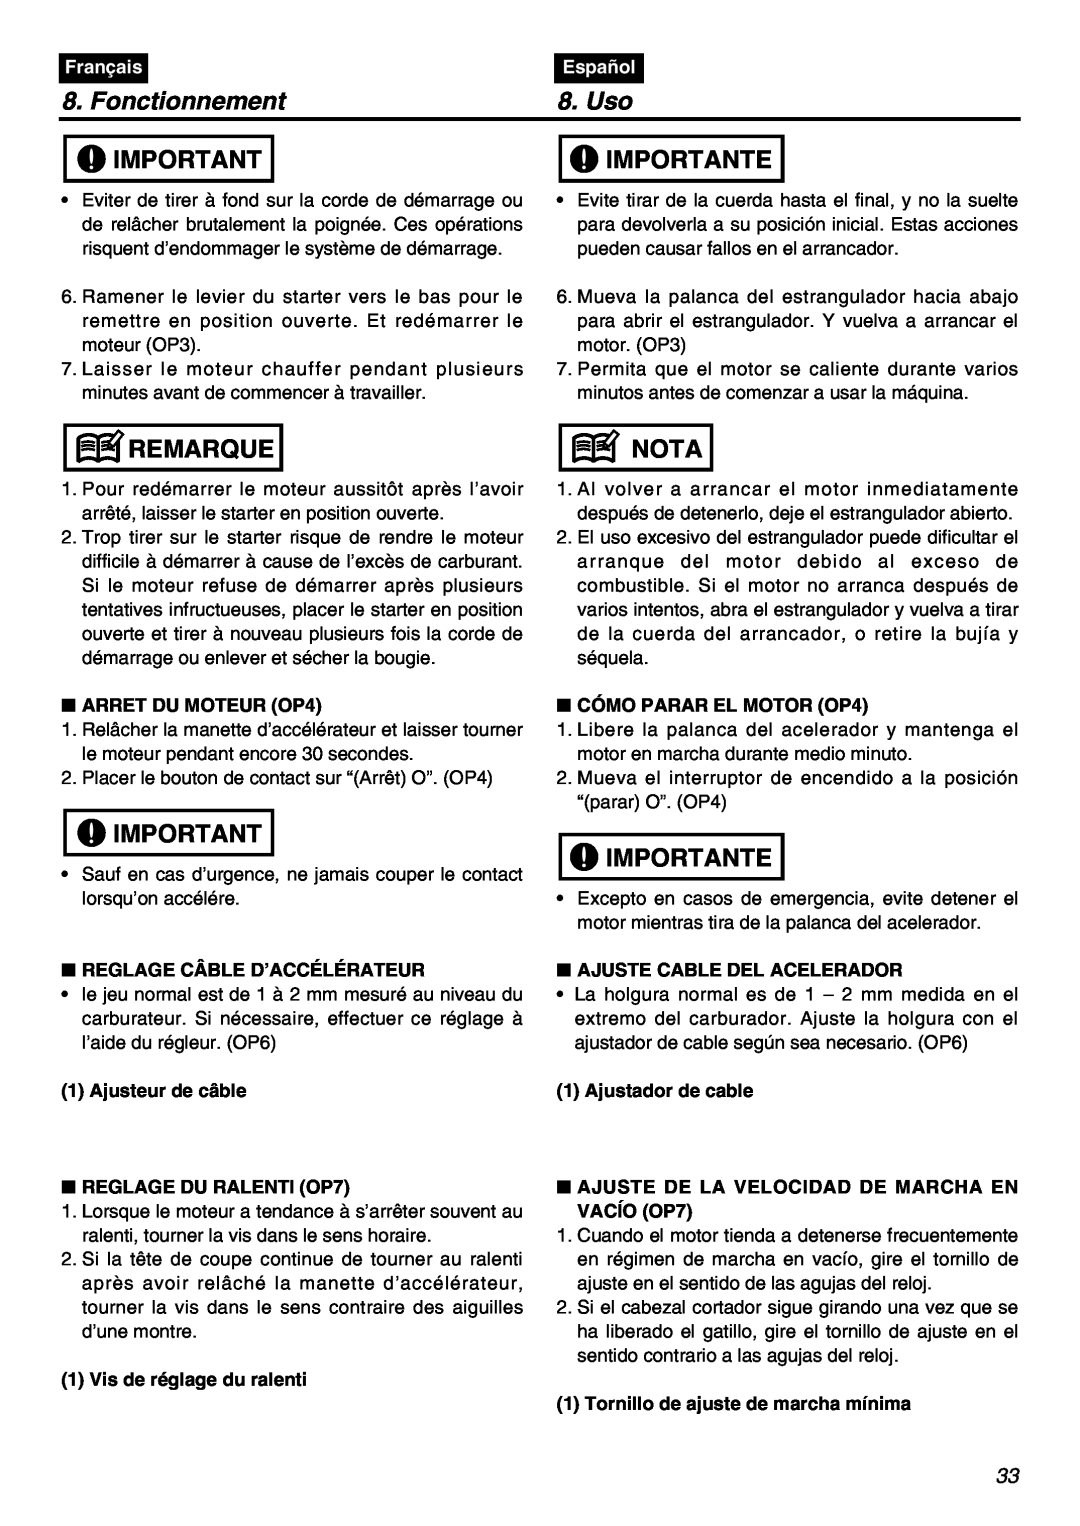 RedMax HEZ3001S, HEZ2602S, HEZ2401S manual Fonctionnement, Uso, Importante, Remarque, Nota, Français, Español 